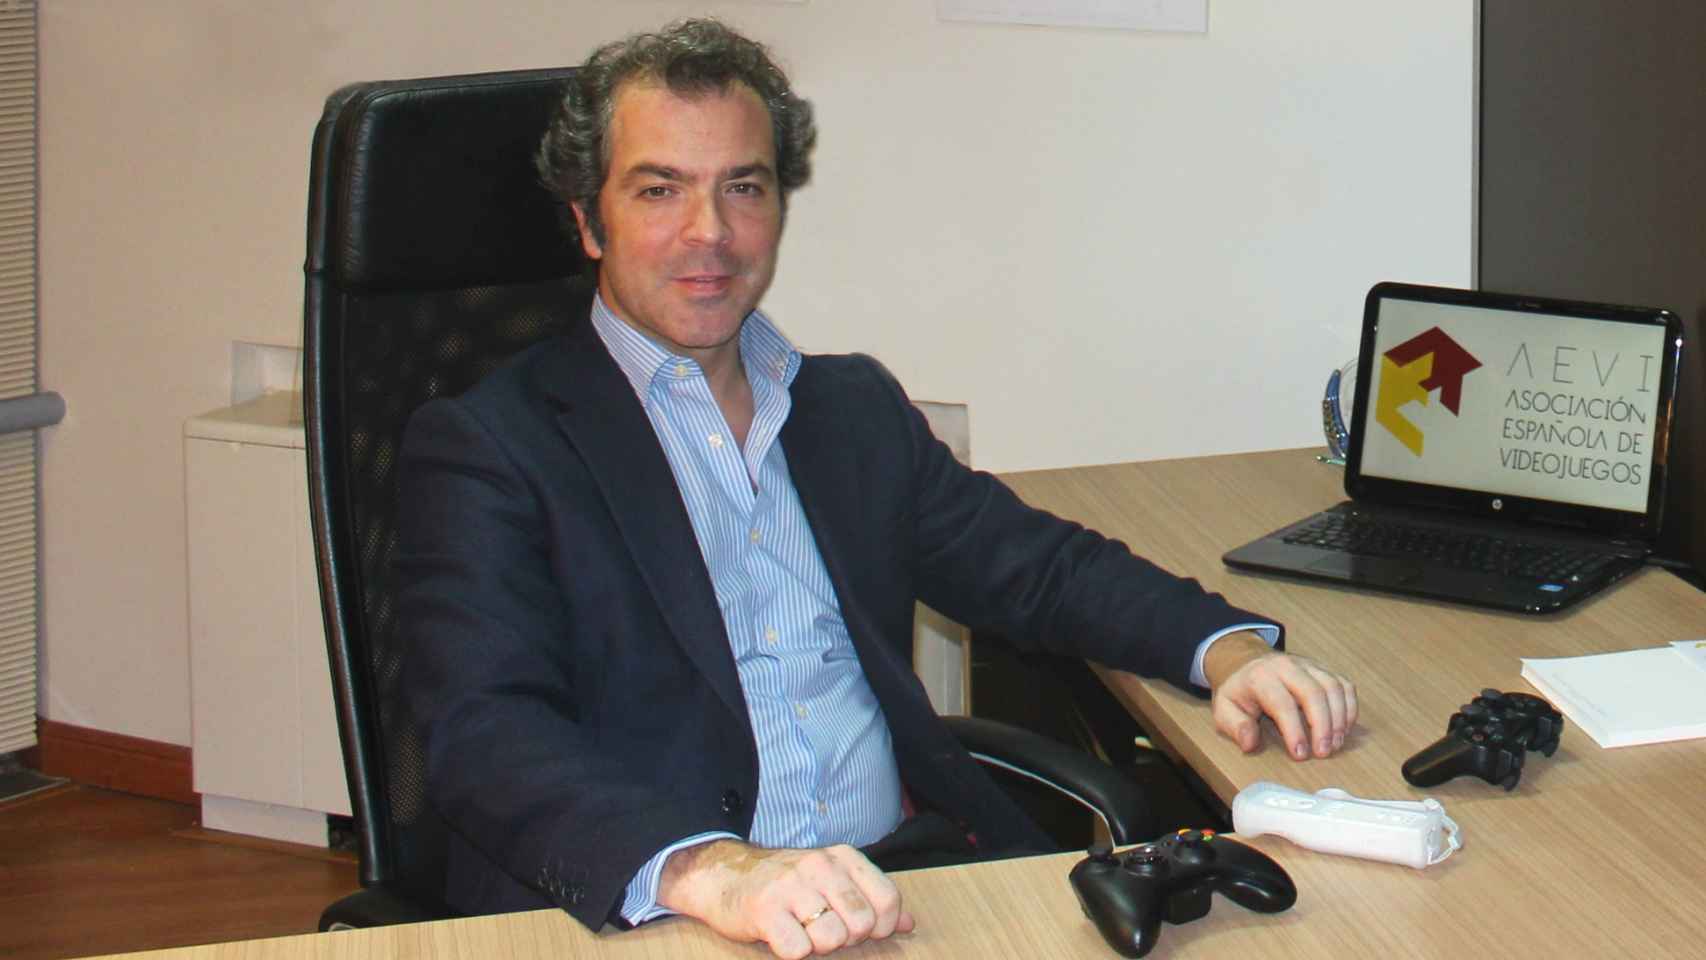 El presidente de la Asociación Española de Videojuegos, José María Moreno